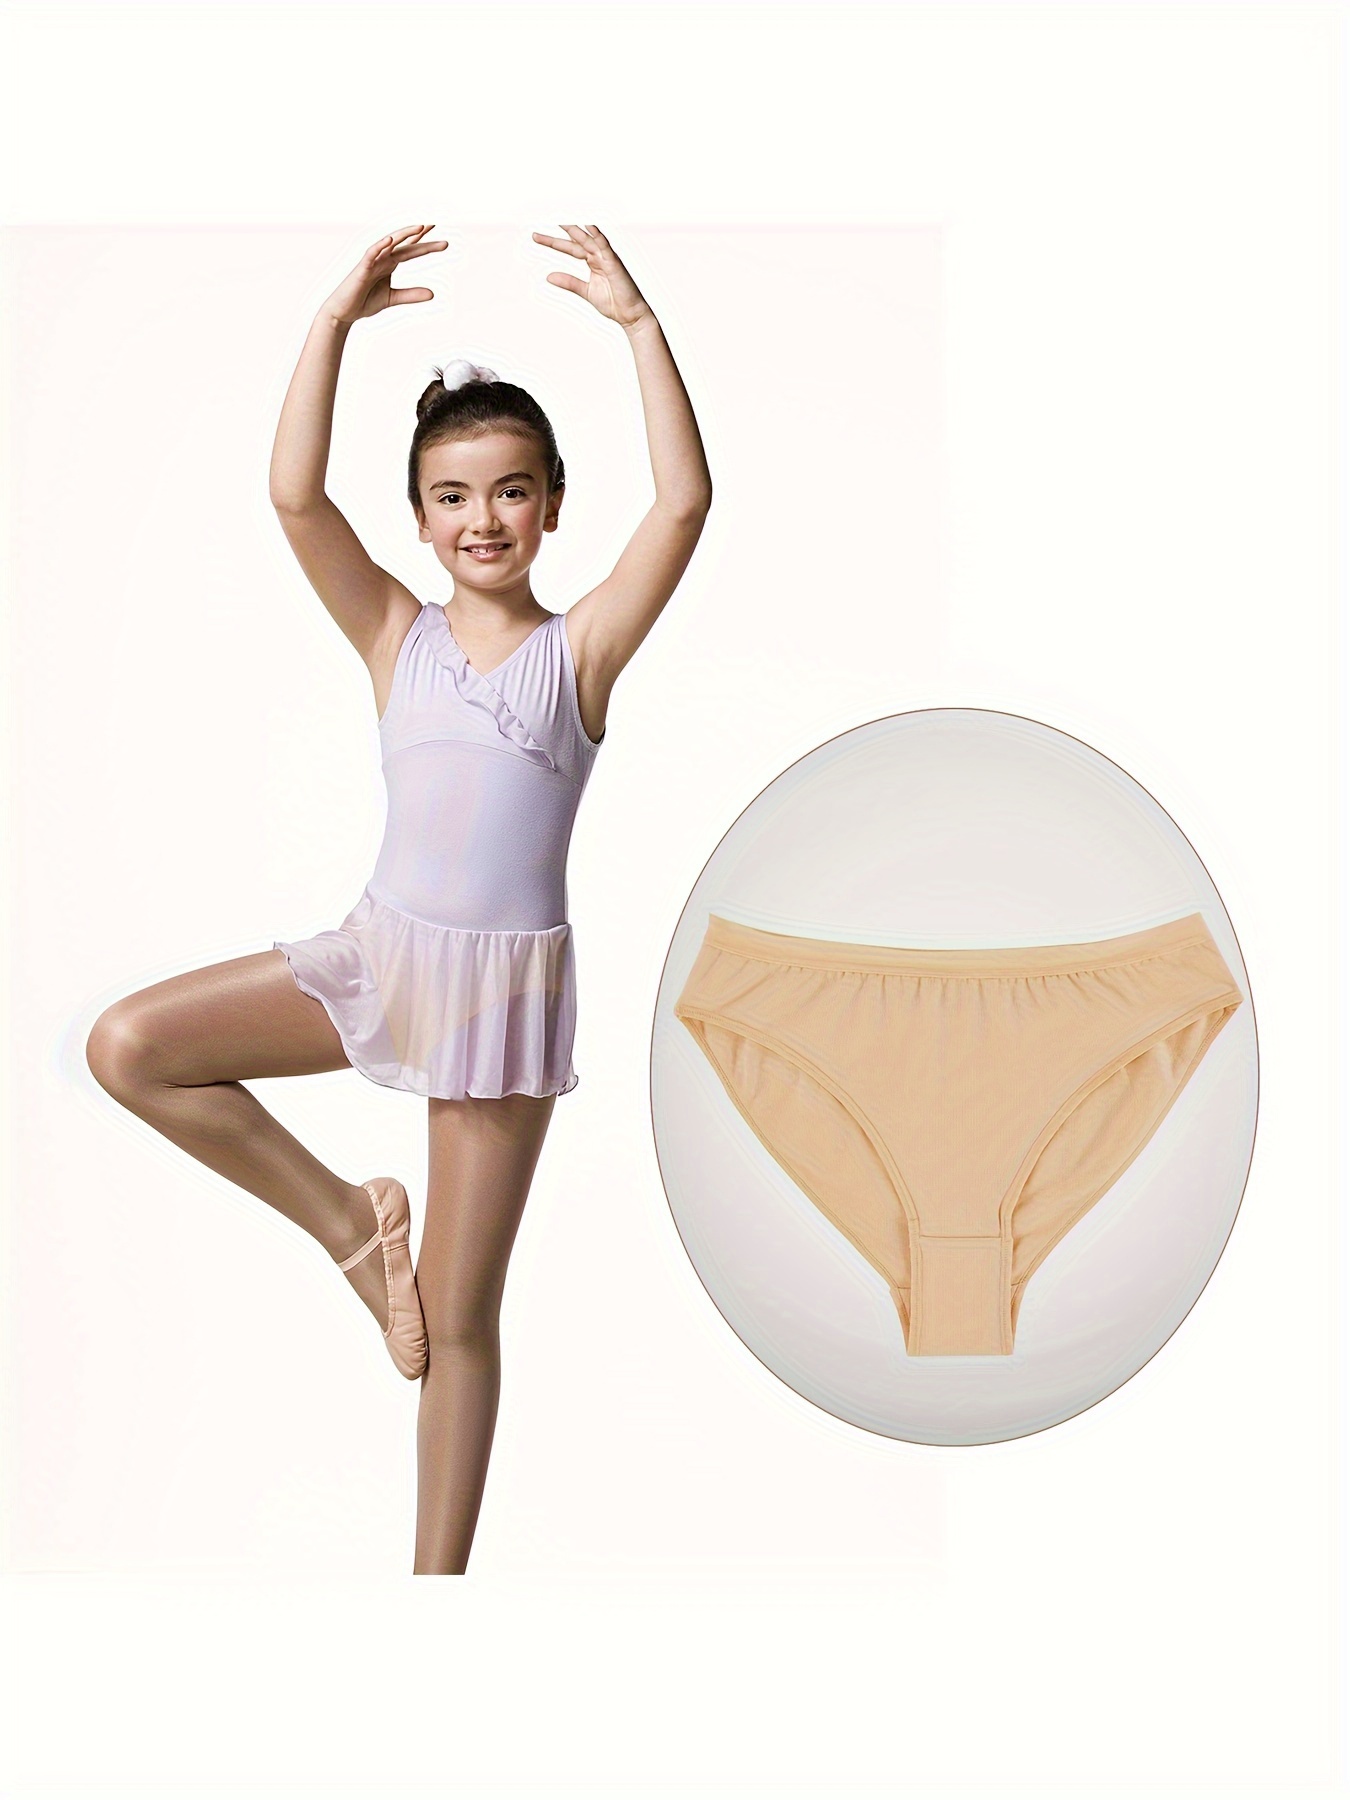 dance undergarments, dance and ballet underwear